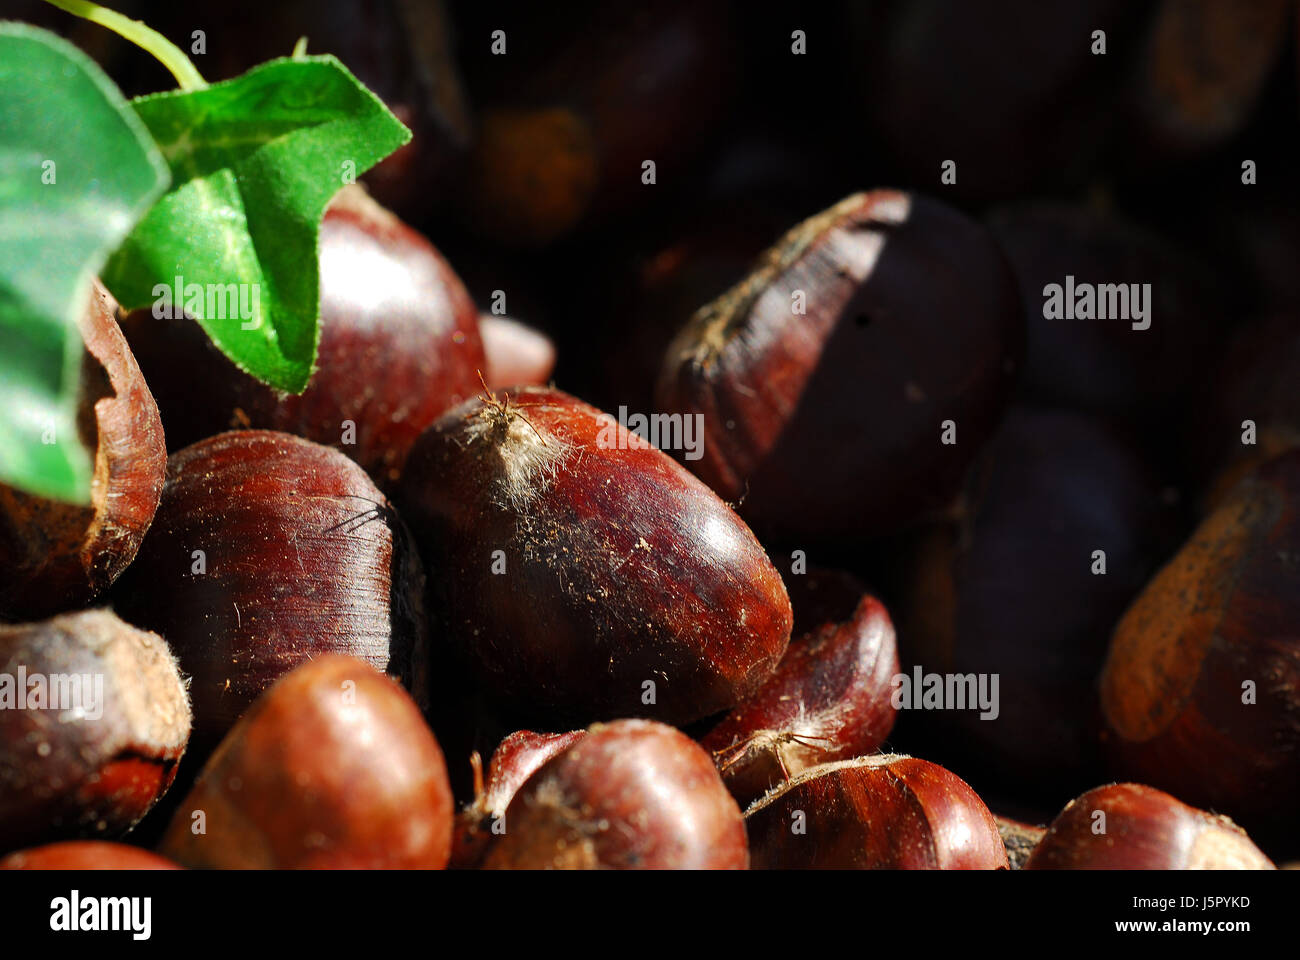 Chestnut délicatesse rouille oxydée comestibles rôti rôti esskastanie desséchée Banque D'Images